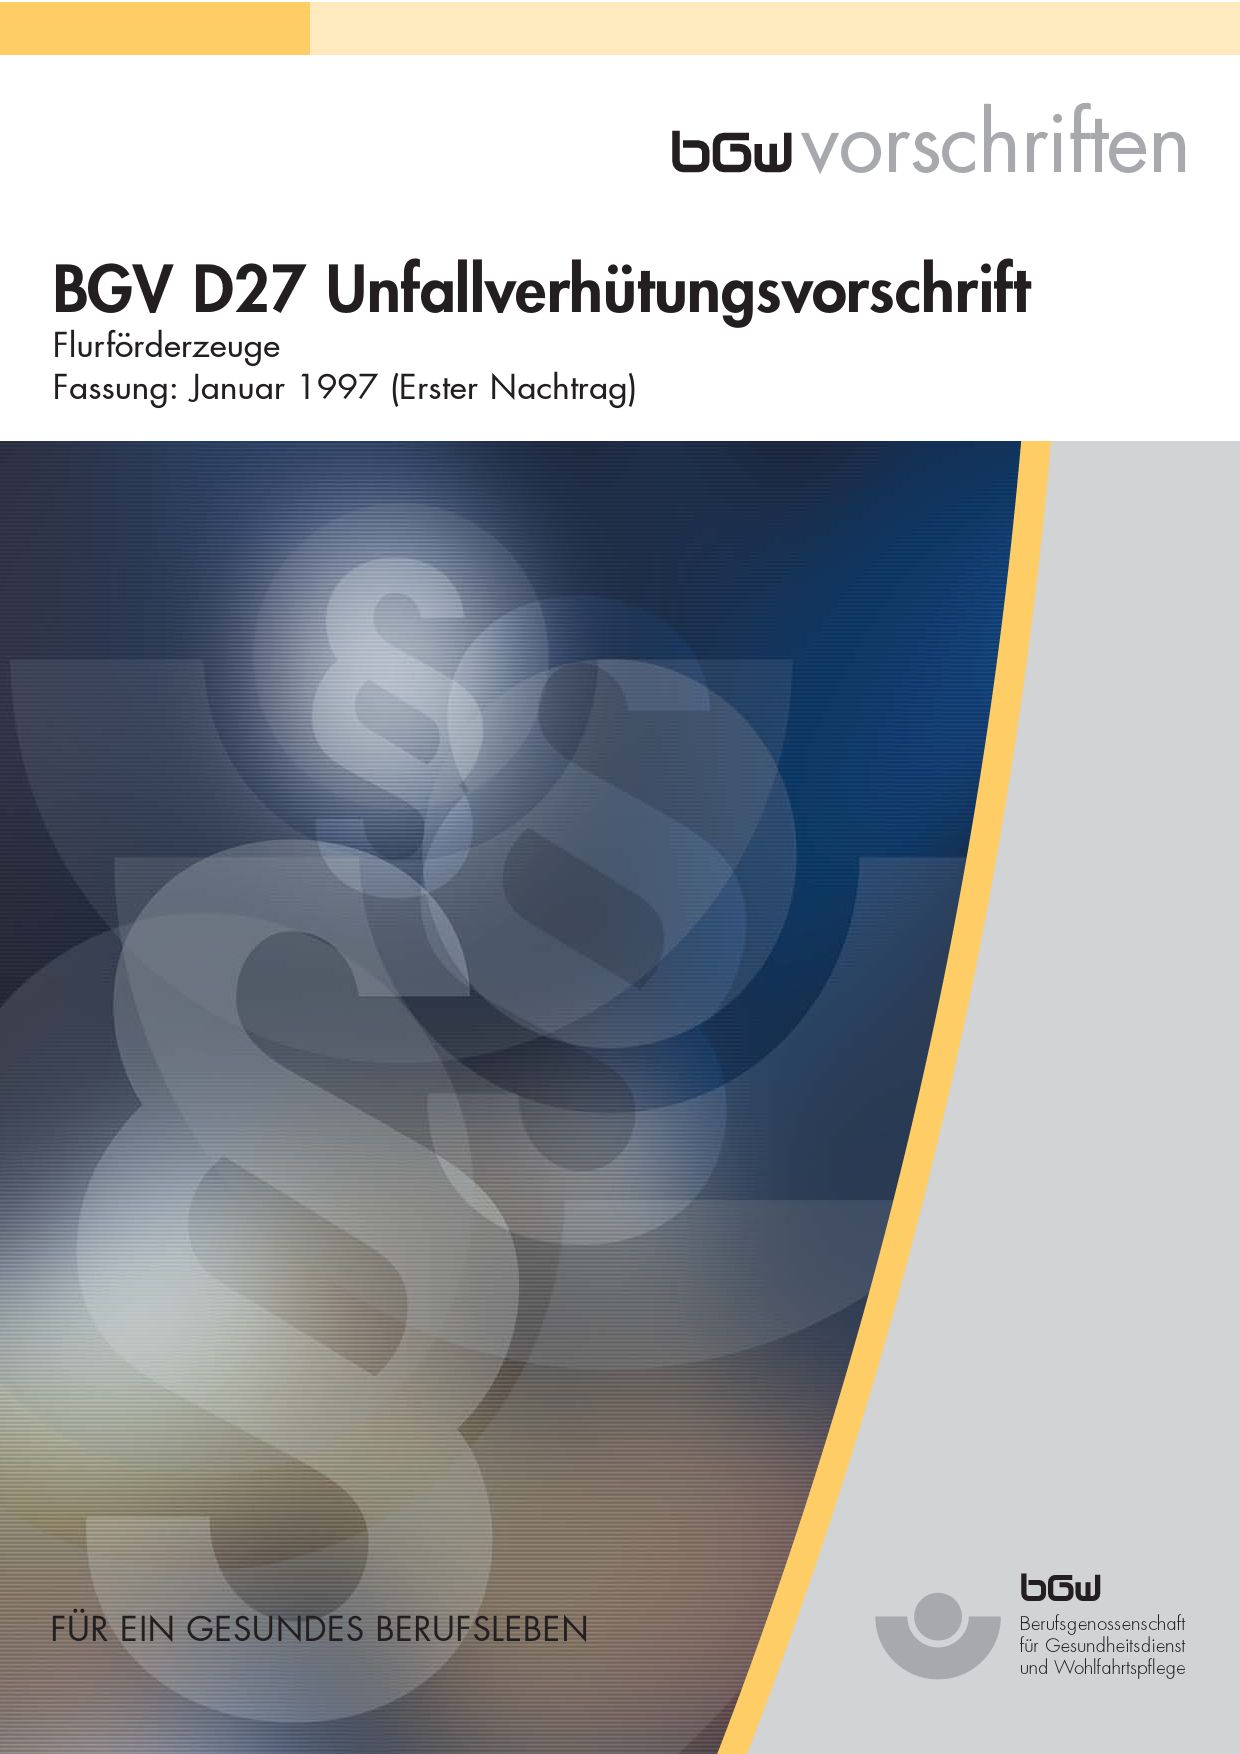 Titelbild: BGV D27 Unfallverhütungsvorschrift.